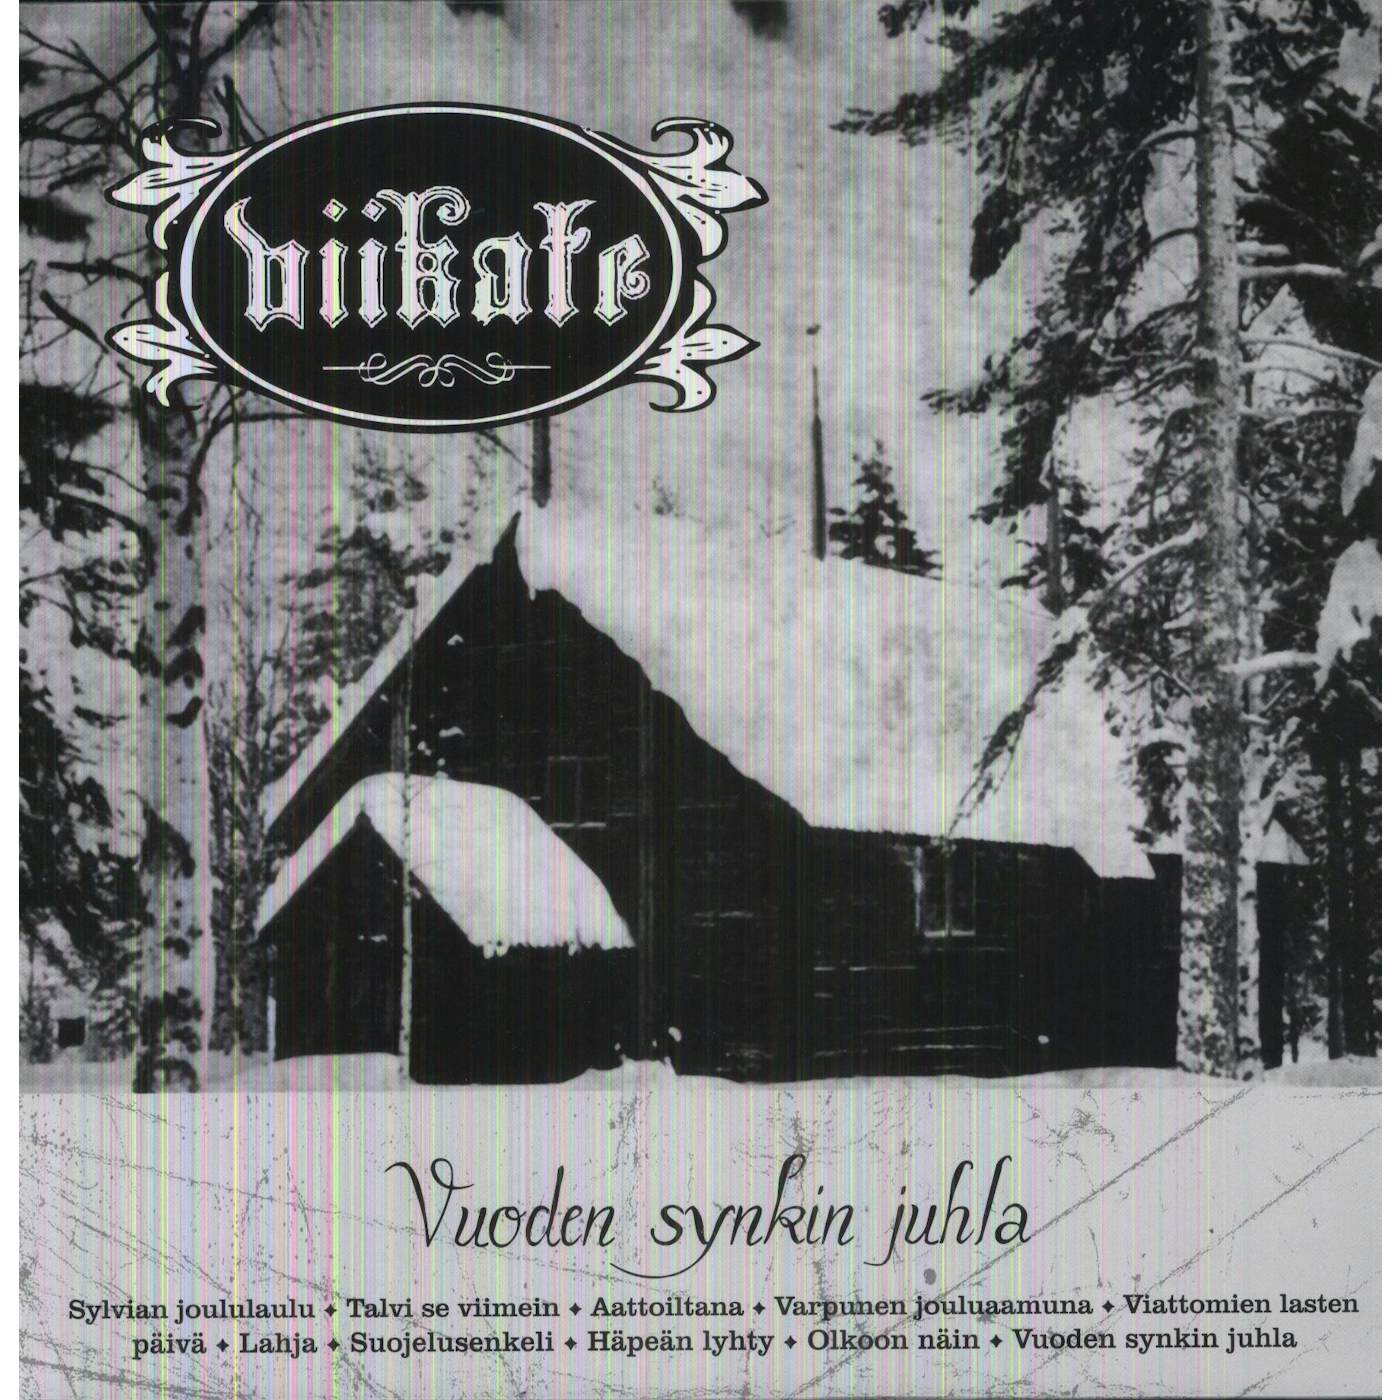 Viikate Vuoden Synkin Juhla Vinyl Record